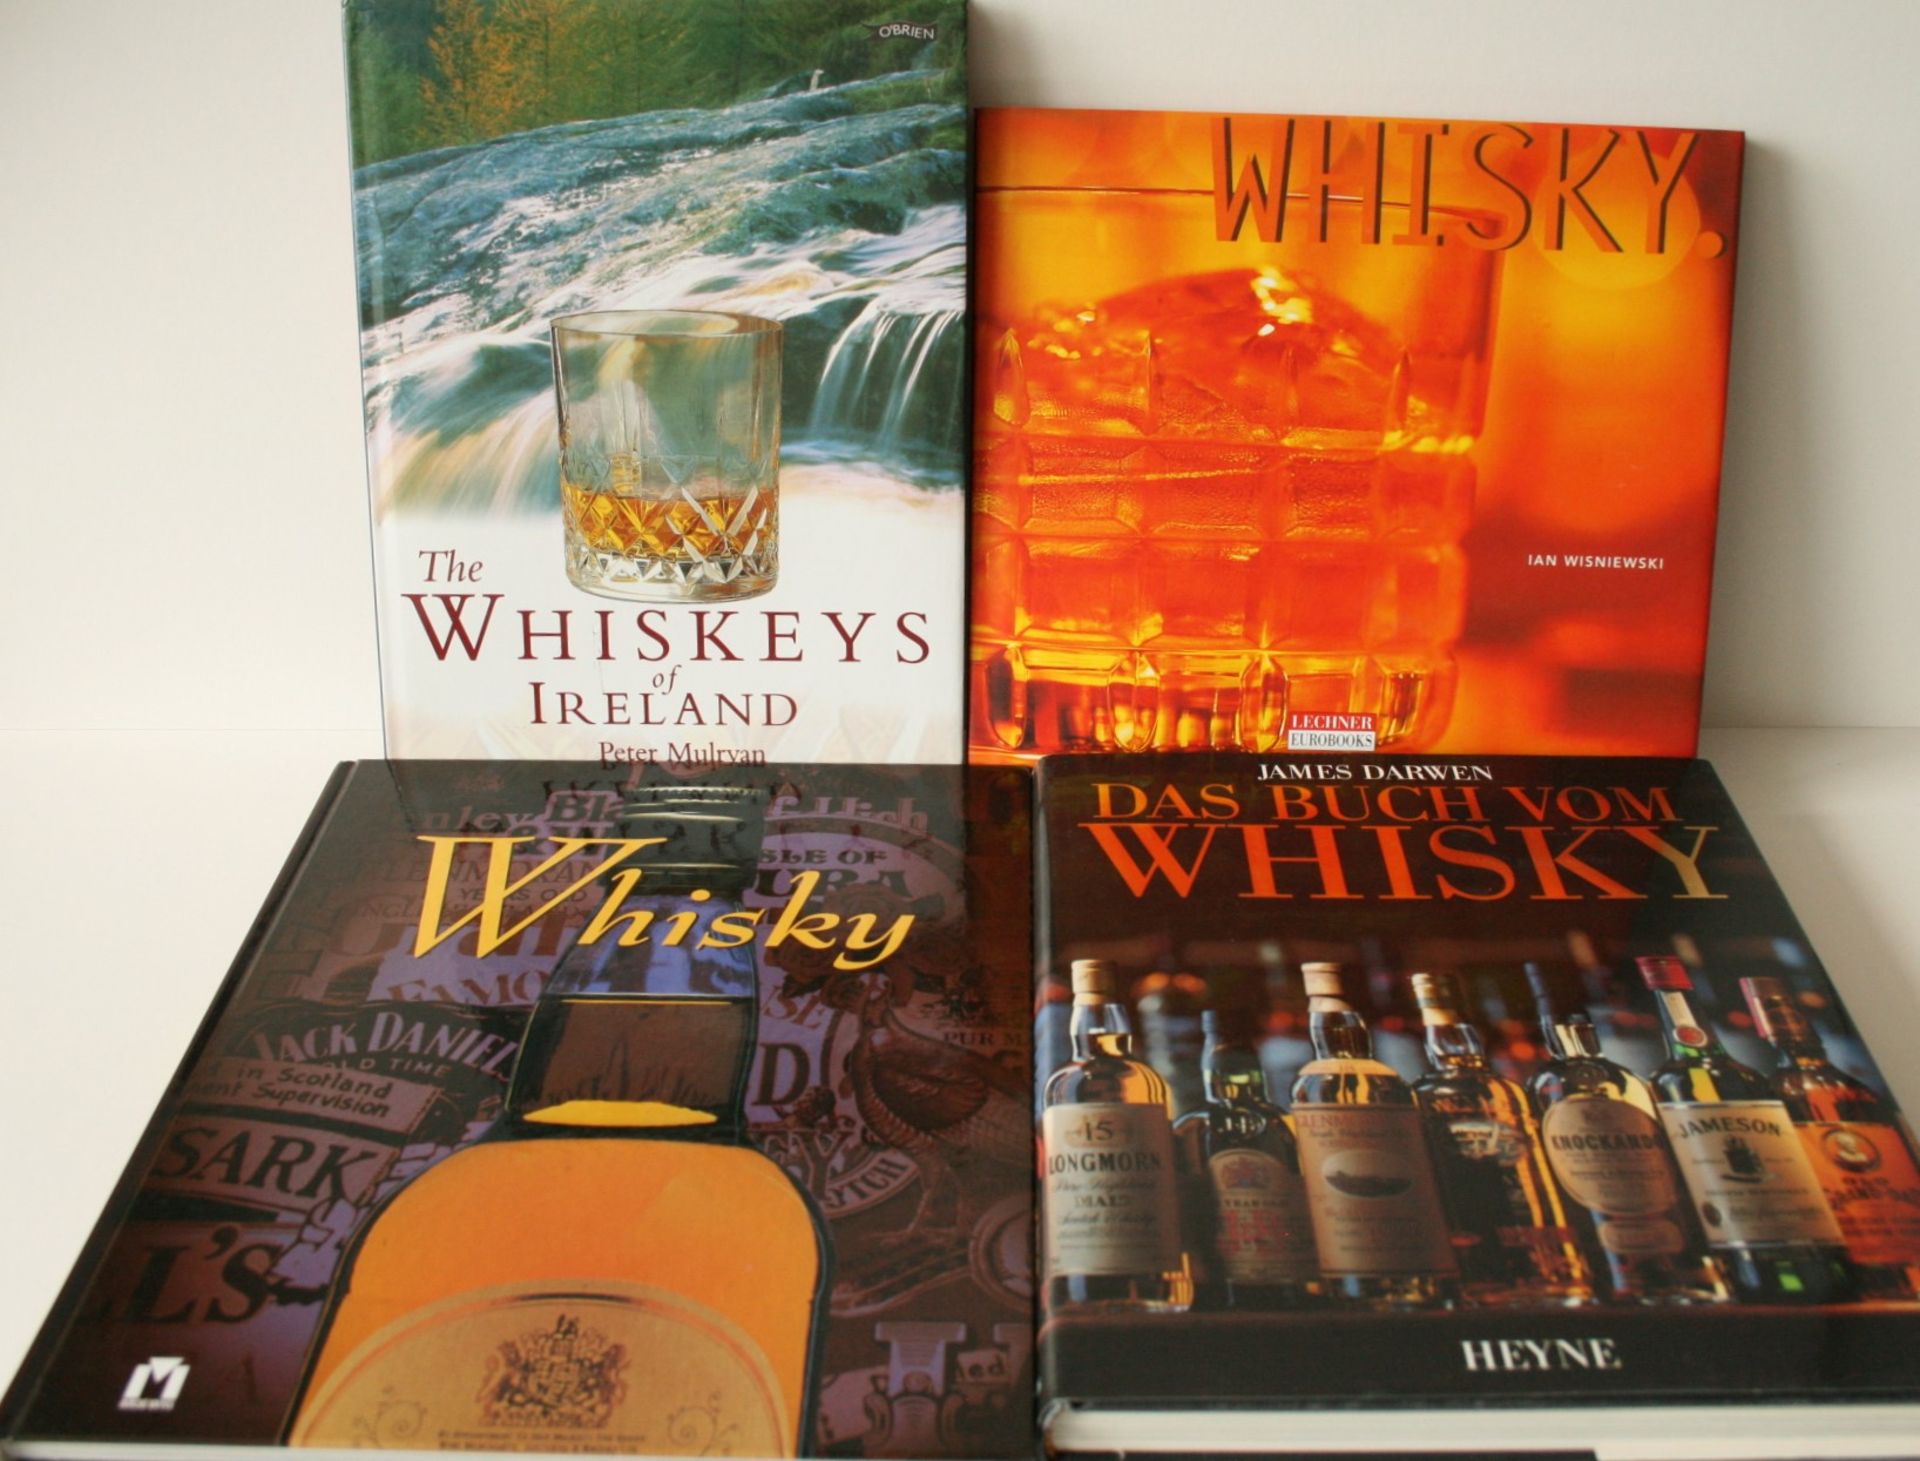 1. James DARWEN : Dazs Buch vom Whisky, 1992, 2. Jean-Bastien ROUSIES : Whisky, 3. [...]